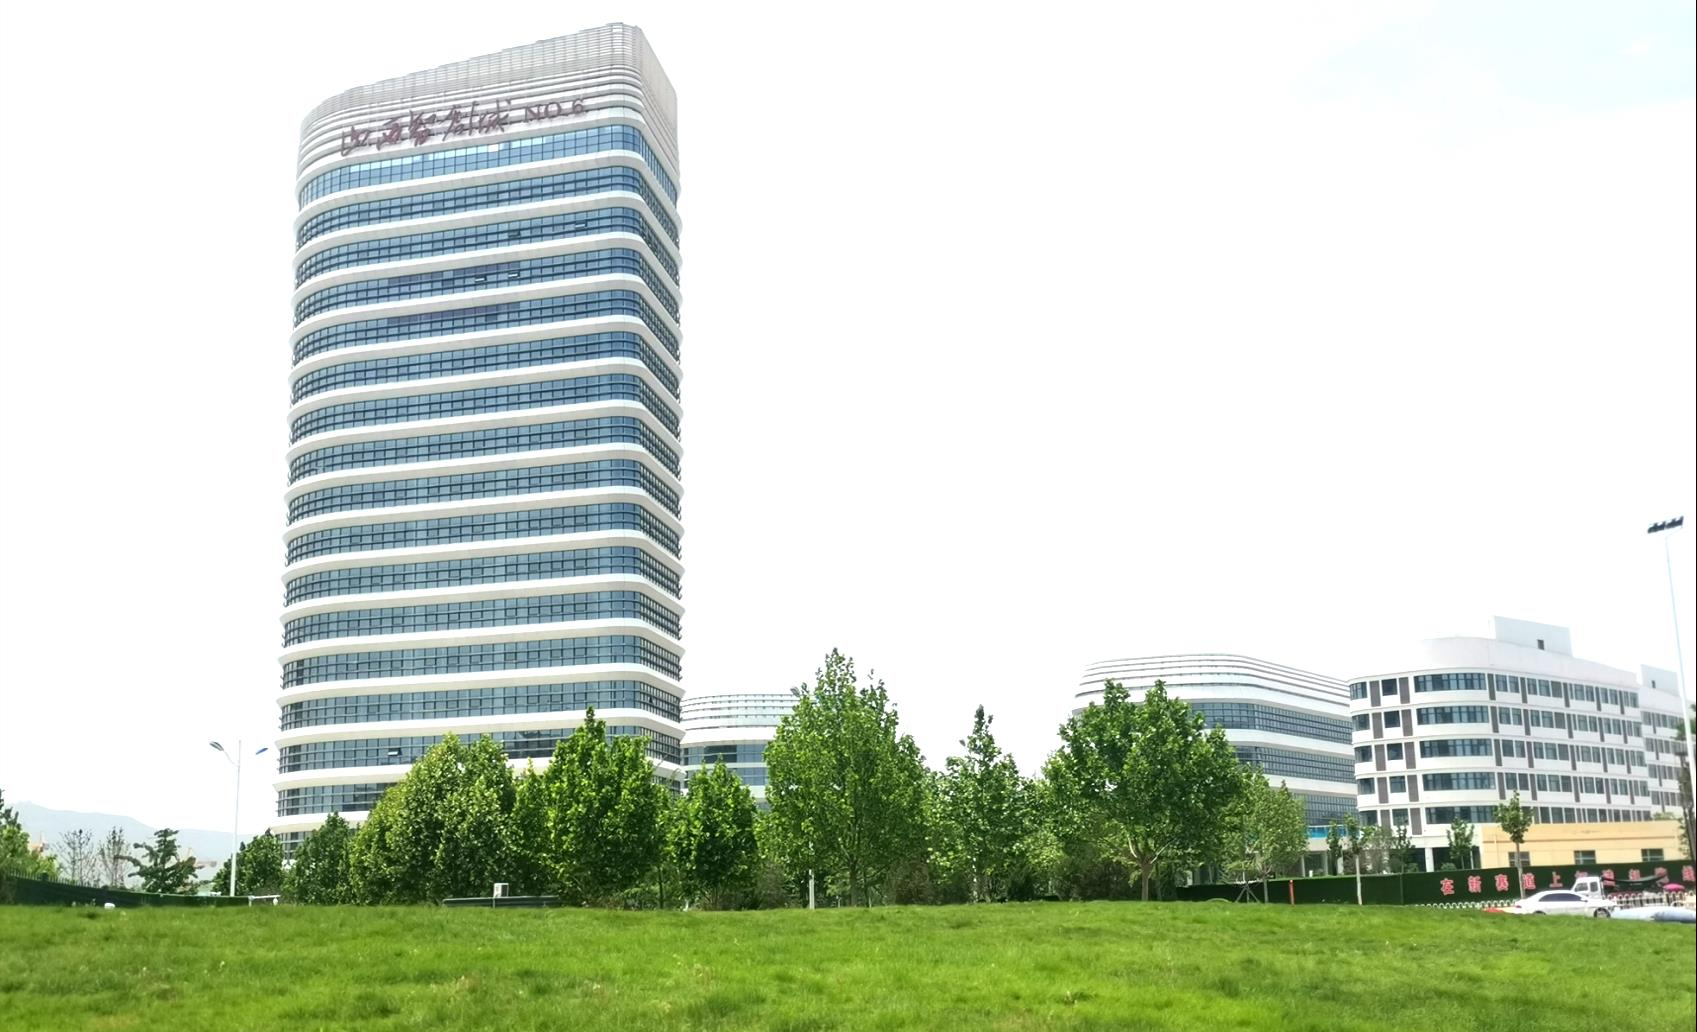  晉城智創城NO.6  現有辦公大樓20325平米對外招商，園區另有6300平米中試車間，7200平米加速器。